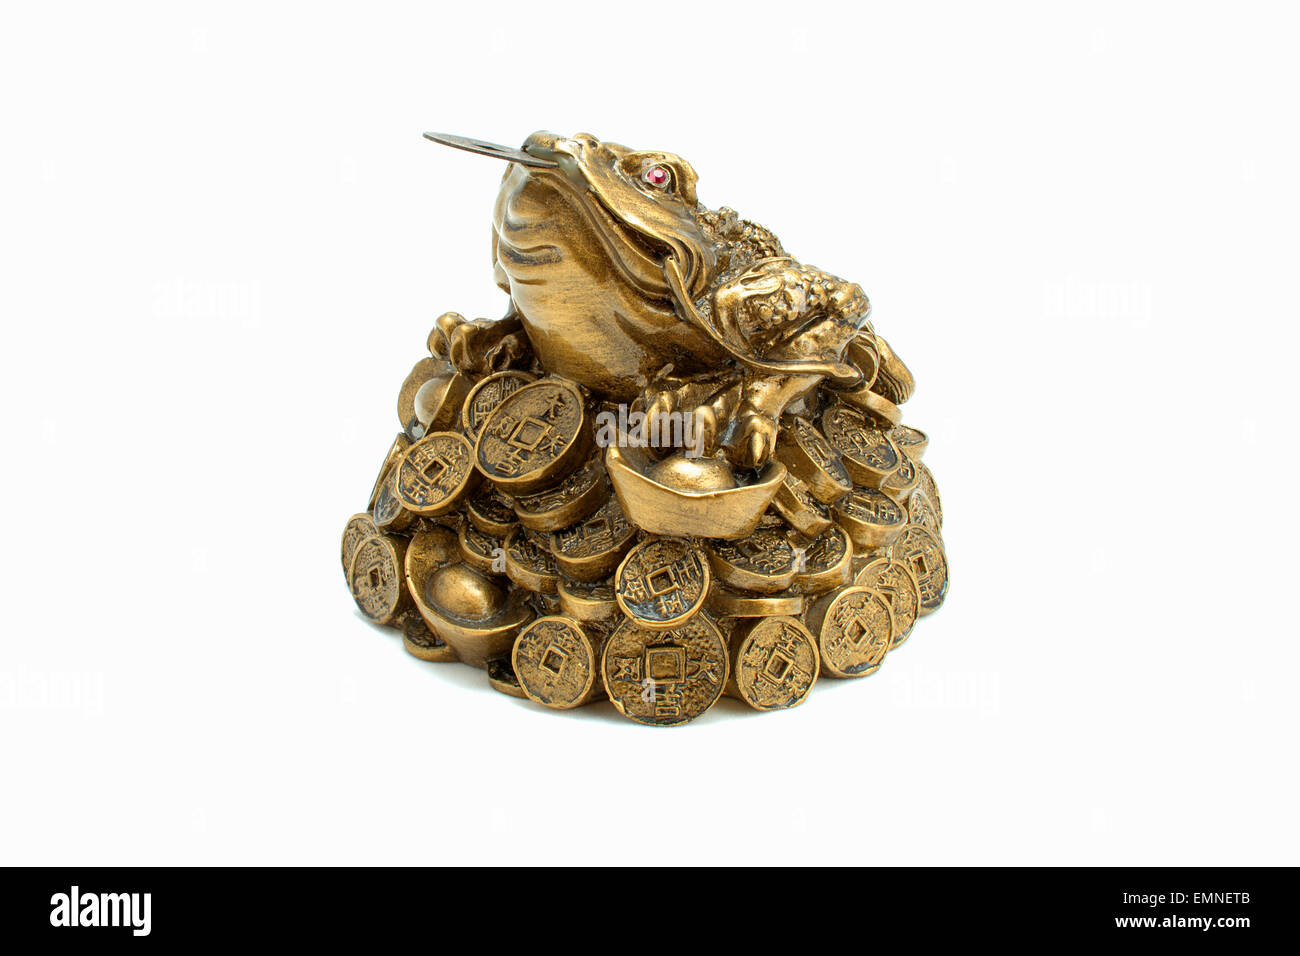 A tre gambe denaro toad seduto su una pila di monete d'oro. Foto Stock